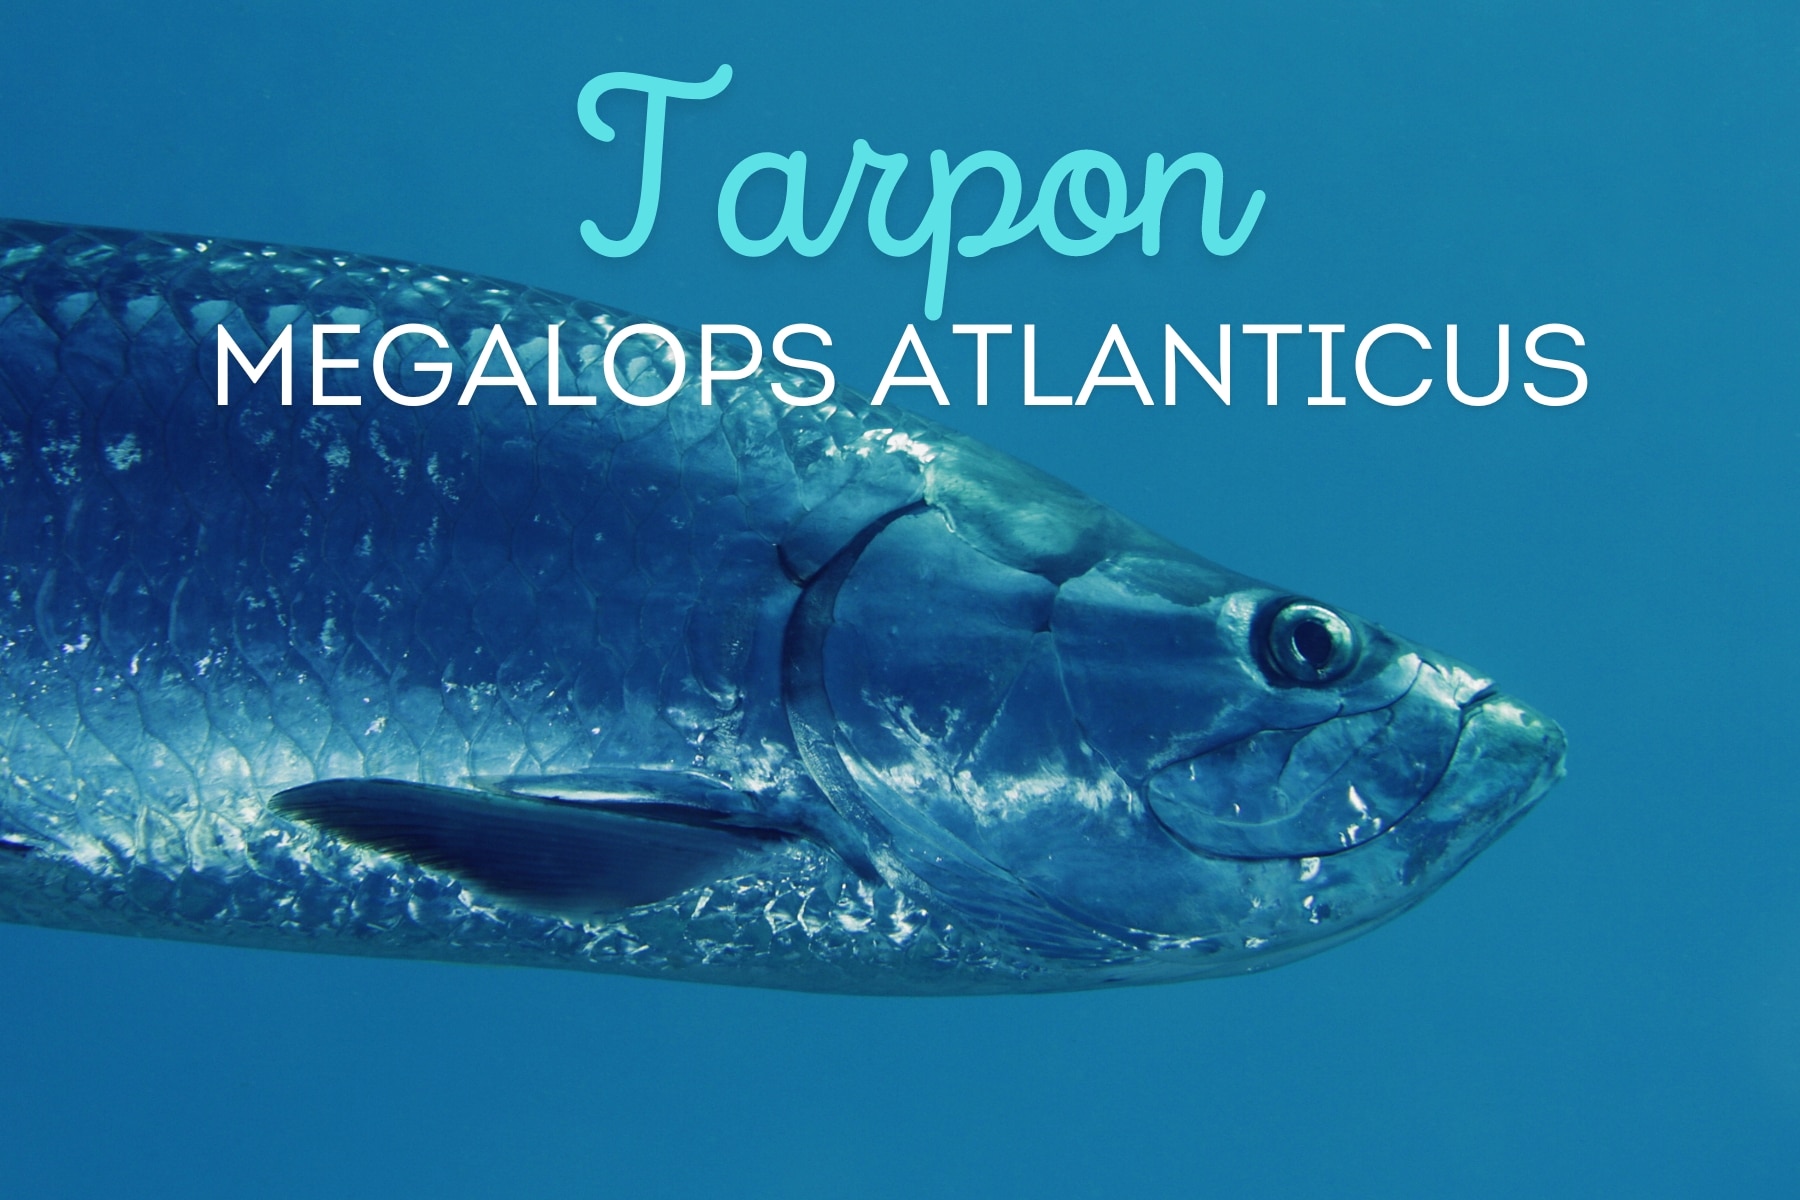 Descubra tudo sobre o Tarpon (Megalops atlanticus): características, habitat, técnicas de pesca e status de vulnerabilidade deste impressionante peixe.